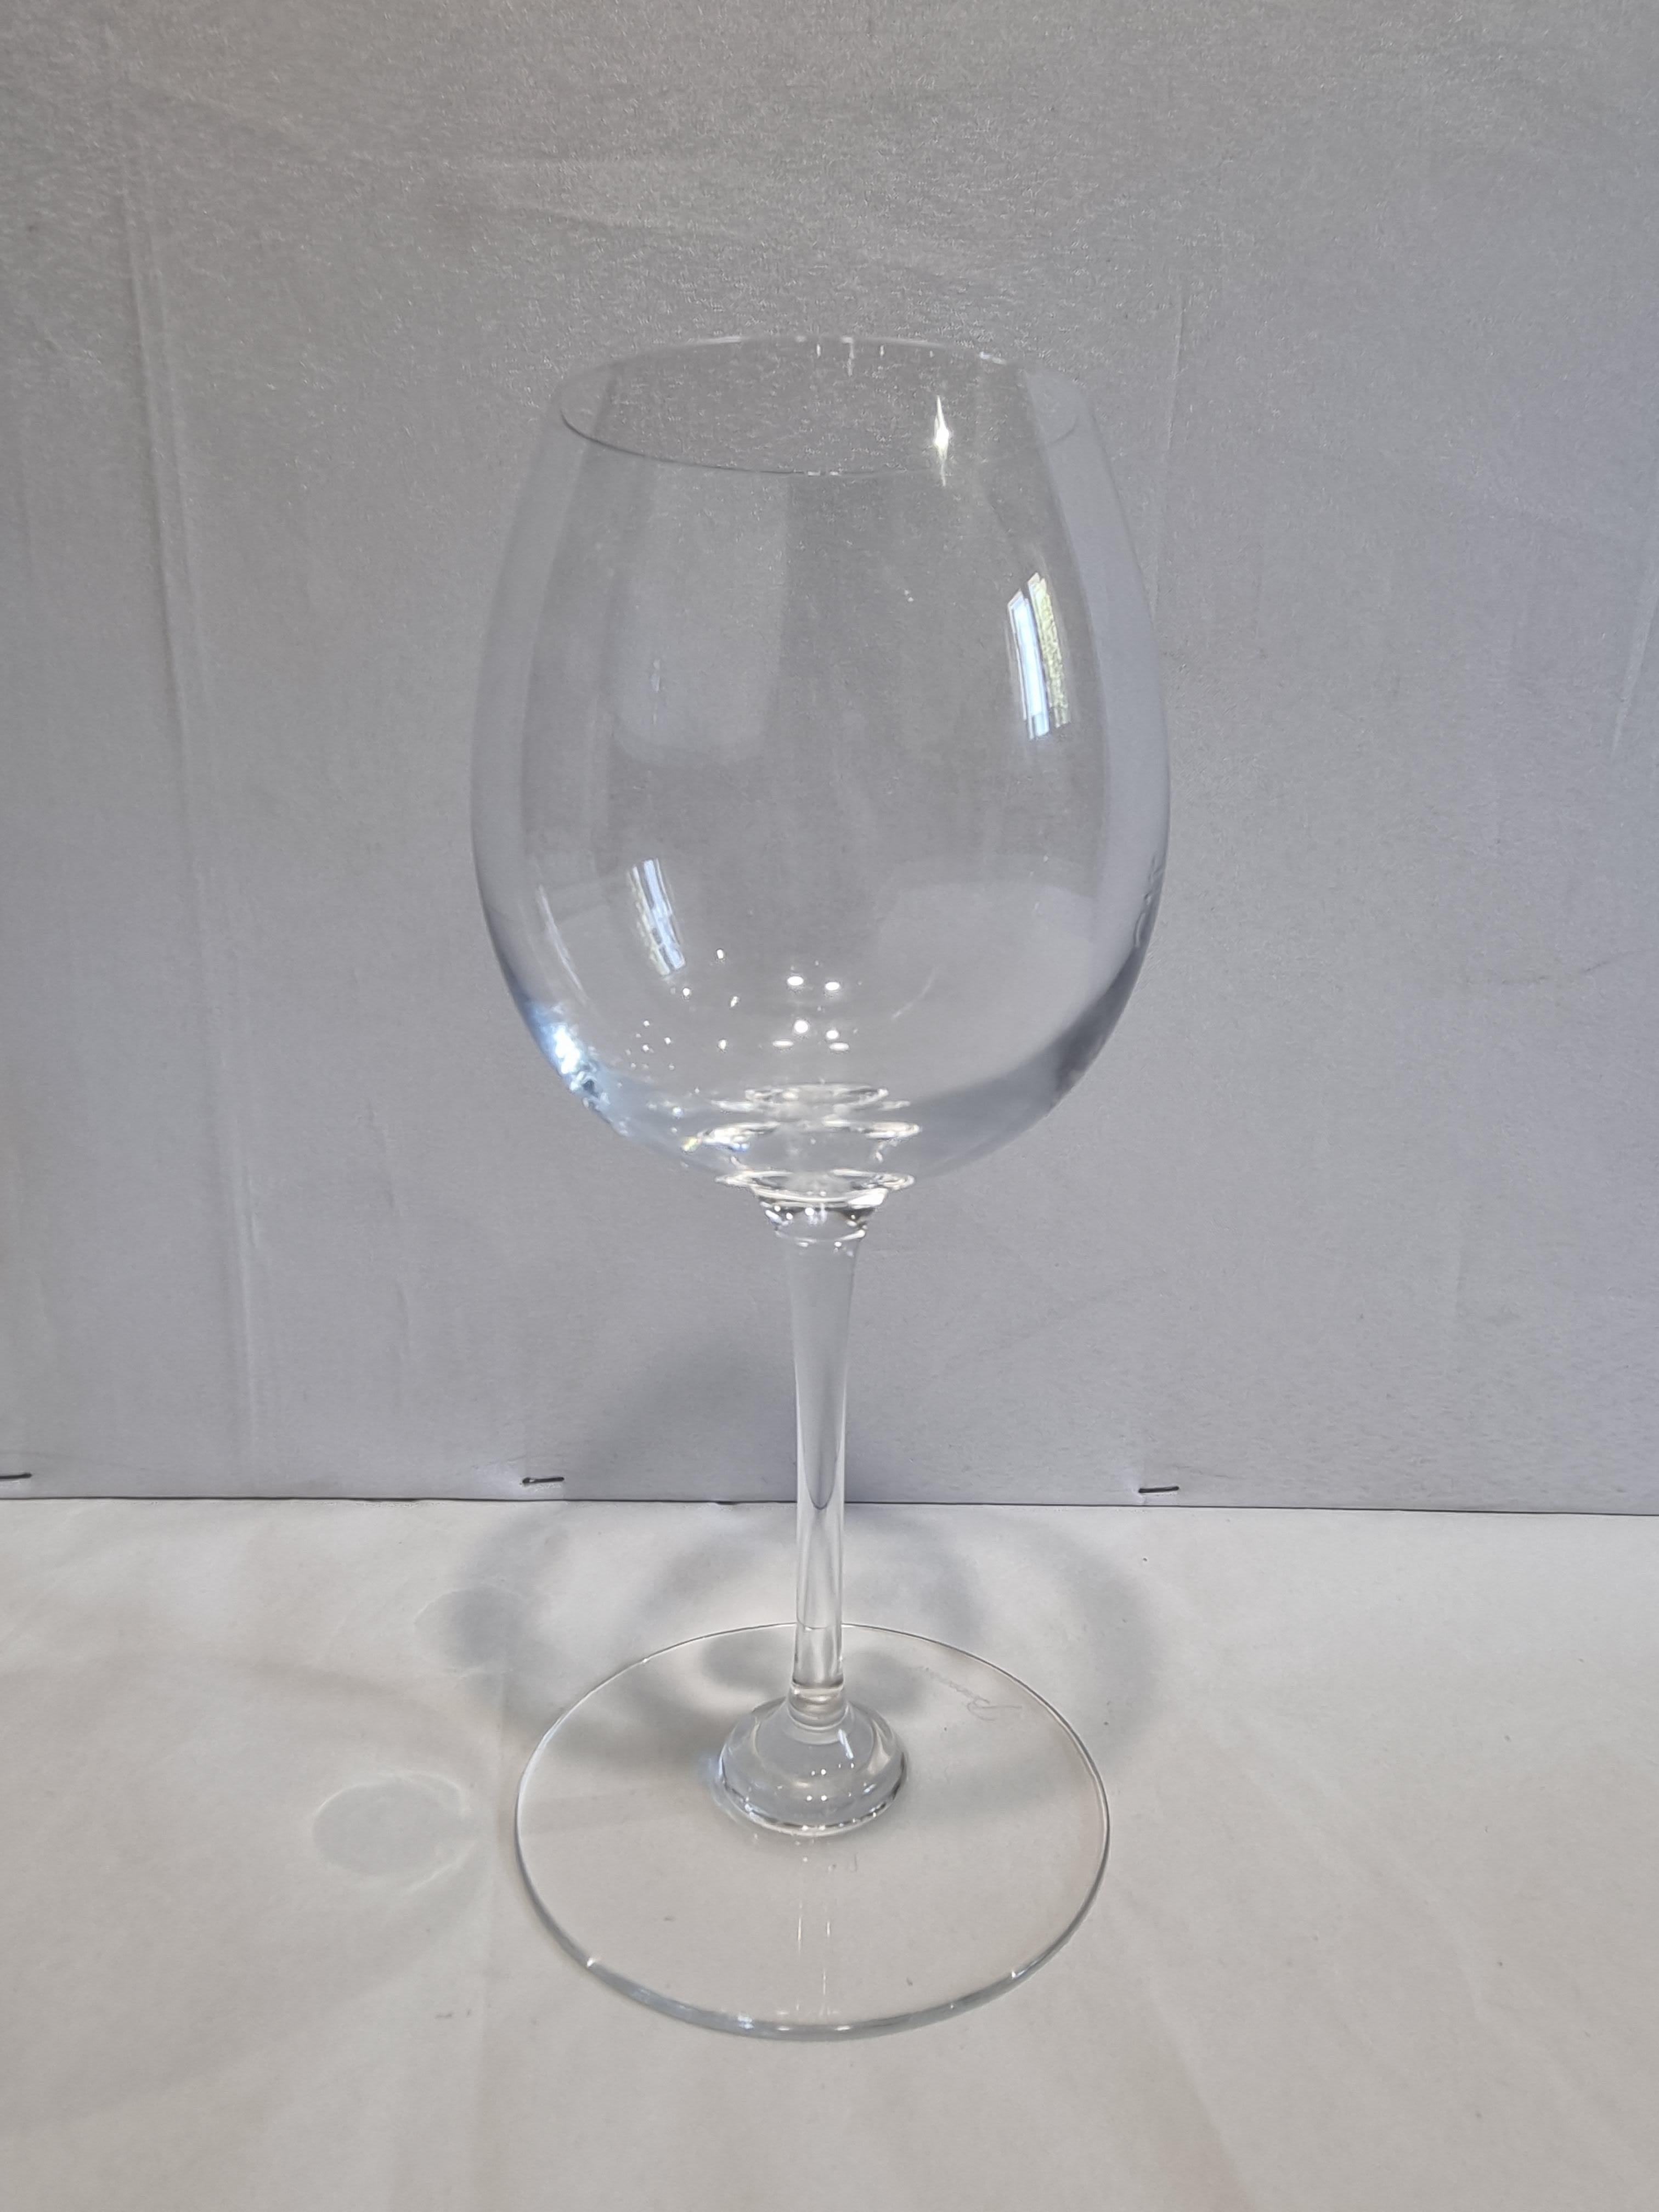 Le site  Le verre à dégustation Bourgogne Oenologie présente une esthétique classique et un design recherché. La forme du bol ouvre la profondeur aromatique du bouquet du vin, maximisant son équilibre savoureux entre le fruit et l'acidité.
Des